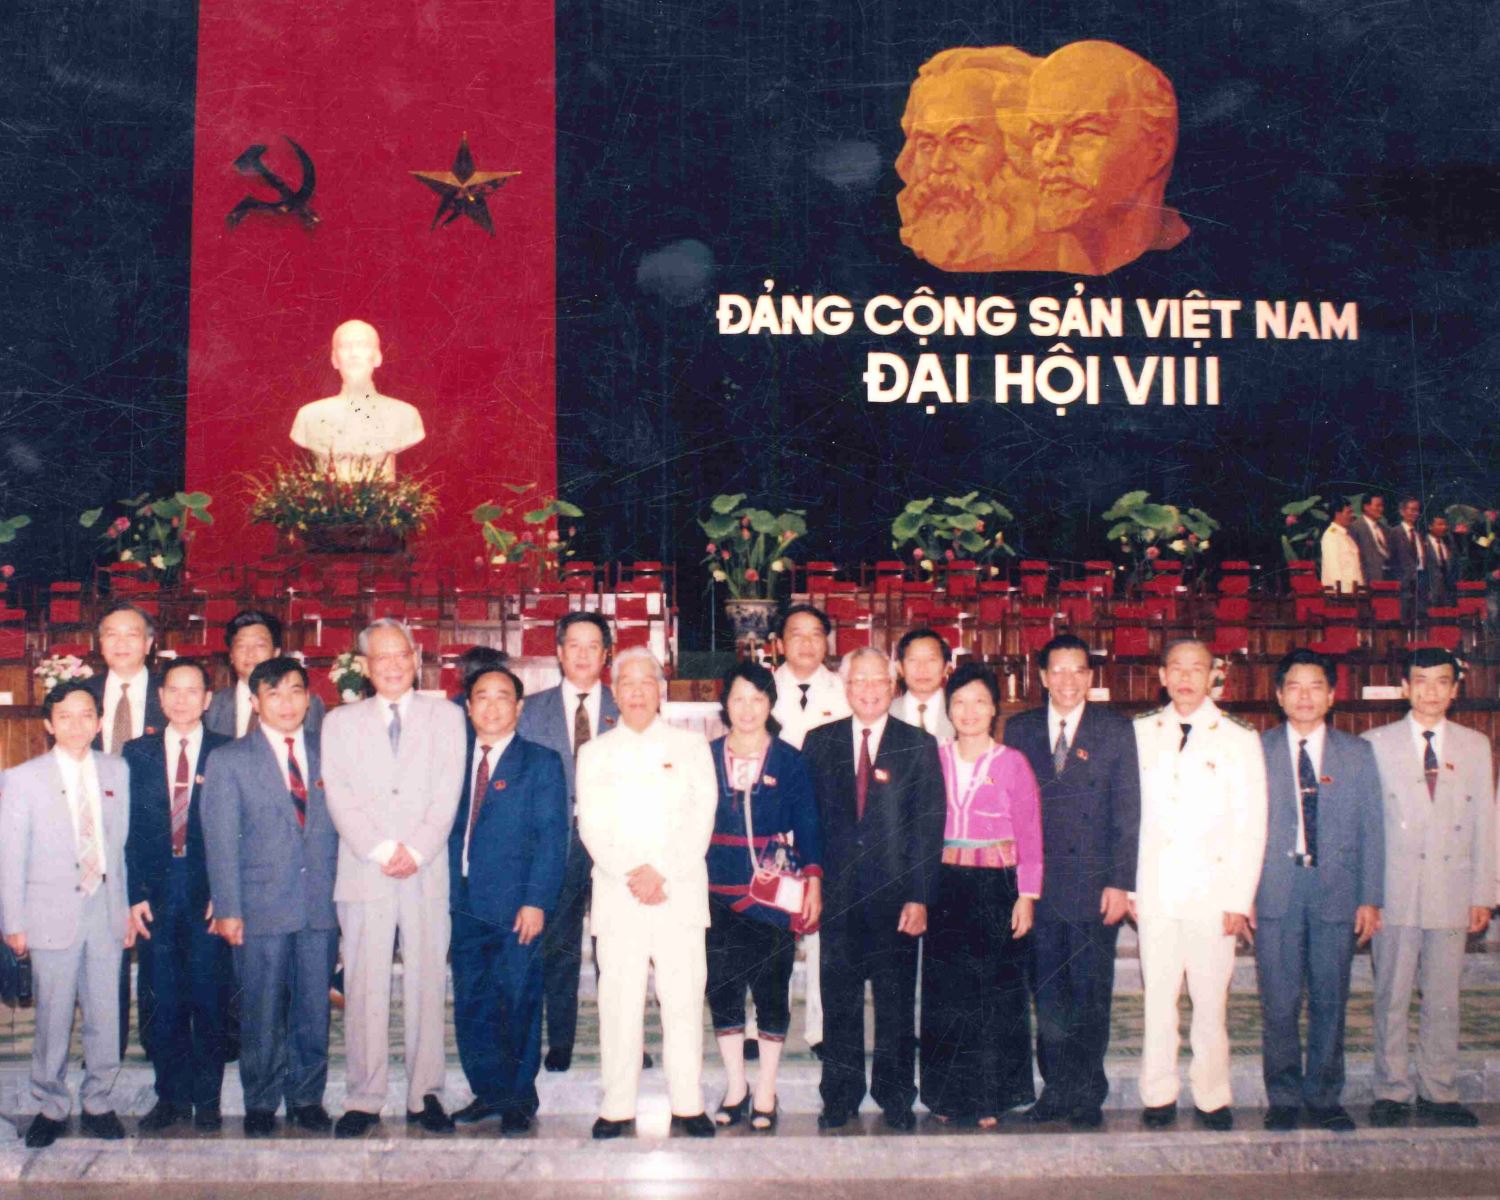 Đ/C Dương Thị Sinh (đứng giữa) trong đoàn đại biểu Hòa Bình  chụp ảnh kỷ niệm với đoàn Chủ tịch Đại hội VIII ĐCSVN.